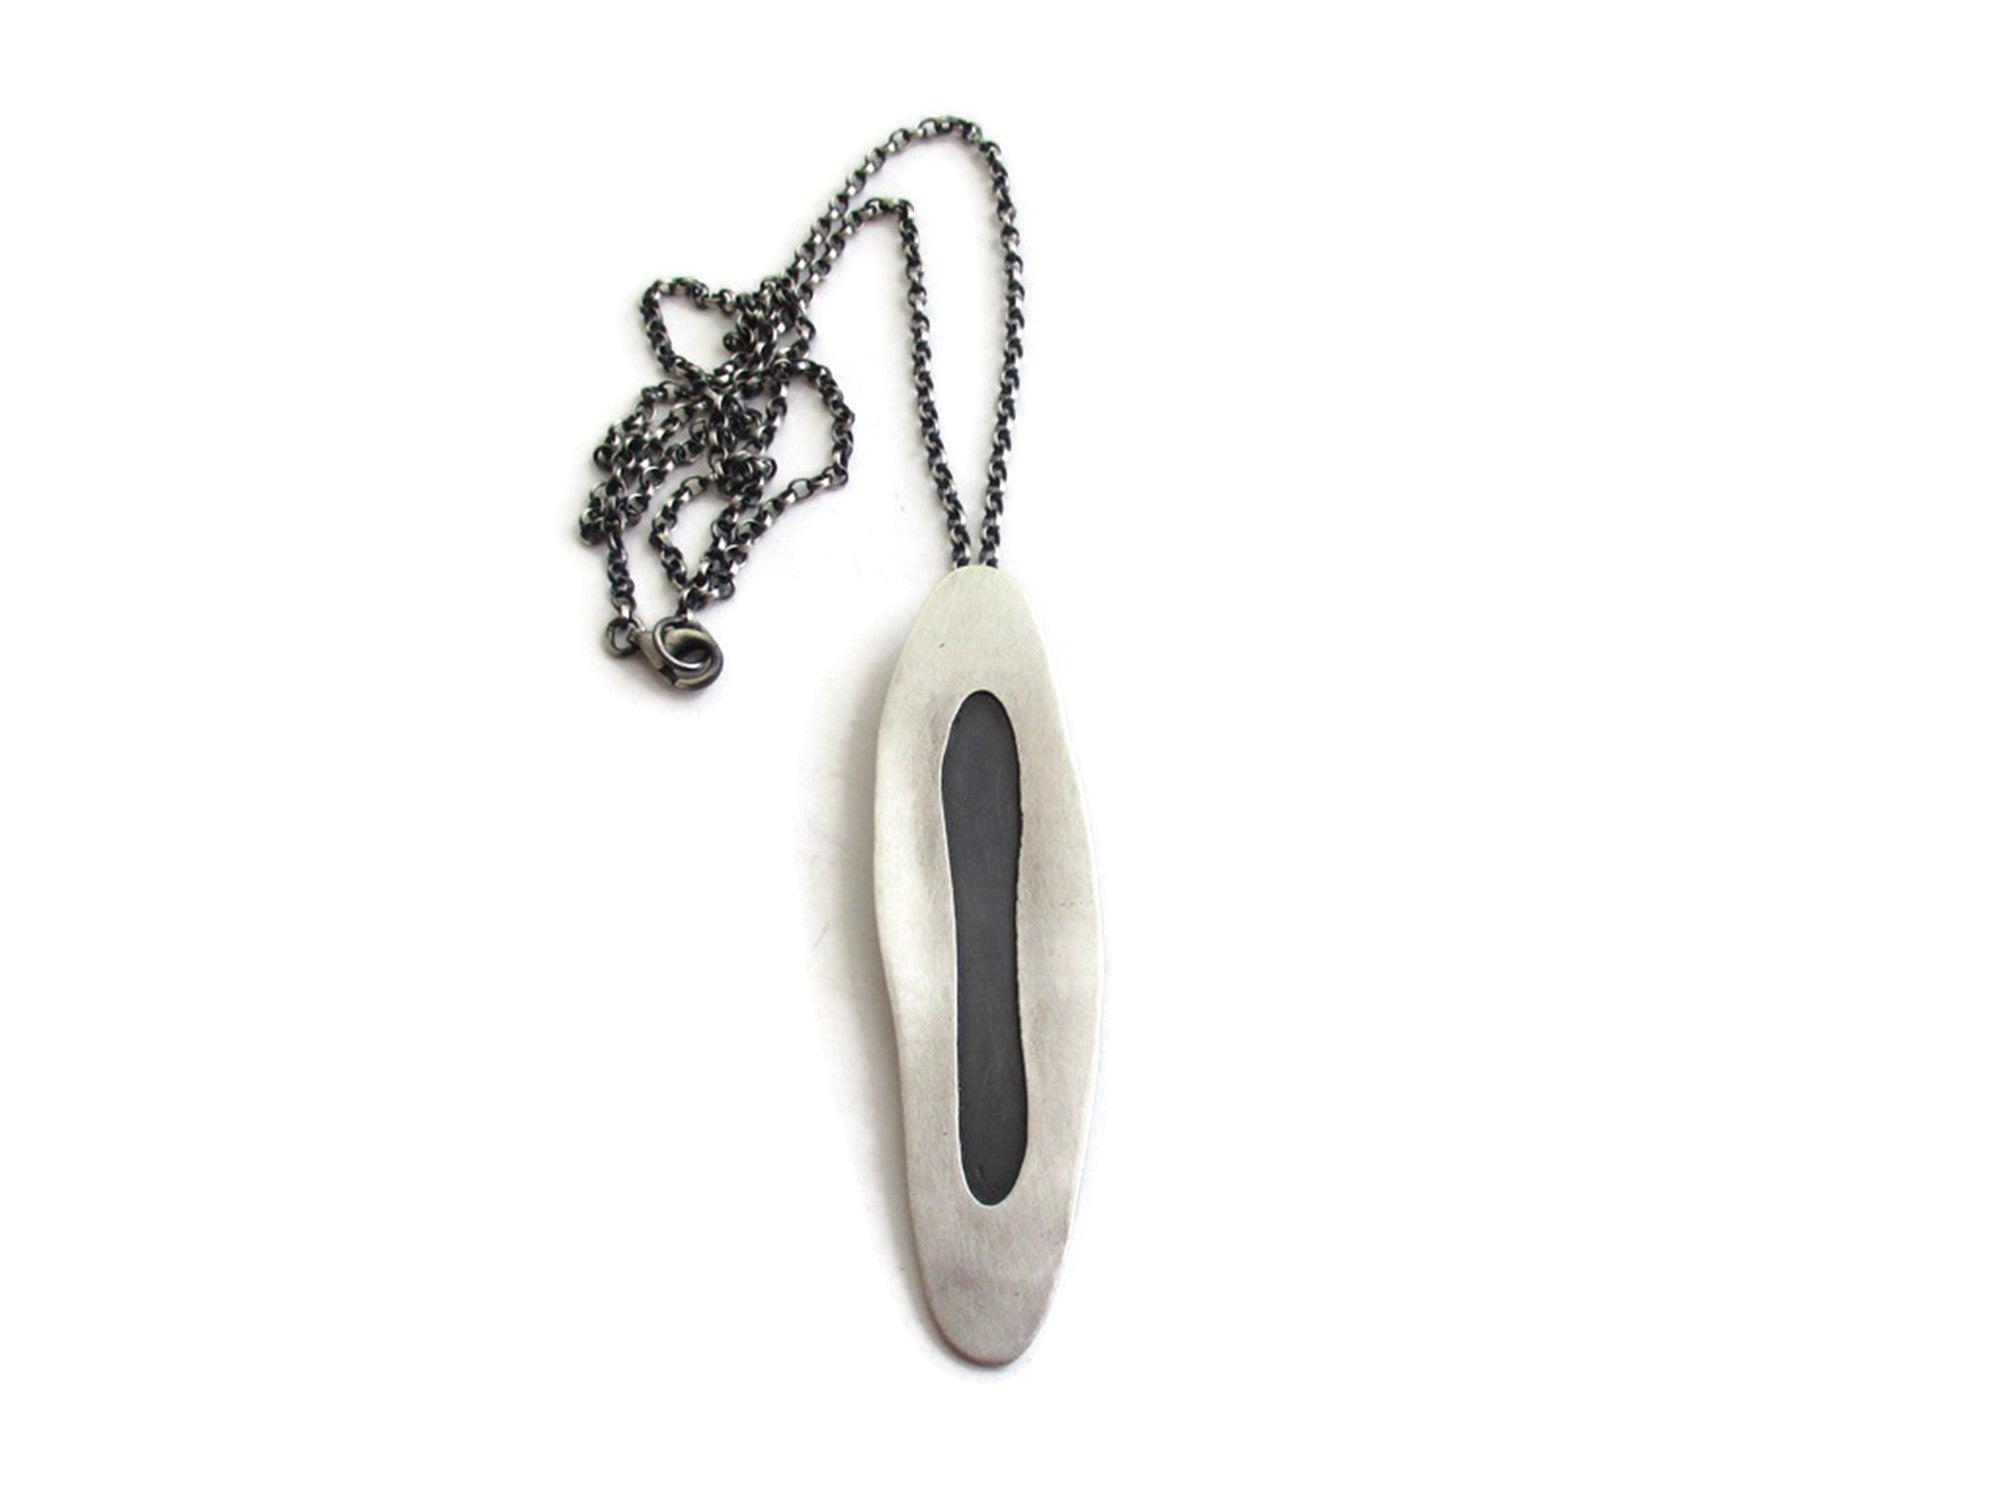 Silver Necklaces - Unique Contemporary Jewelry Design | KimyaJoyas